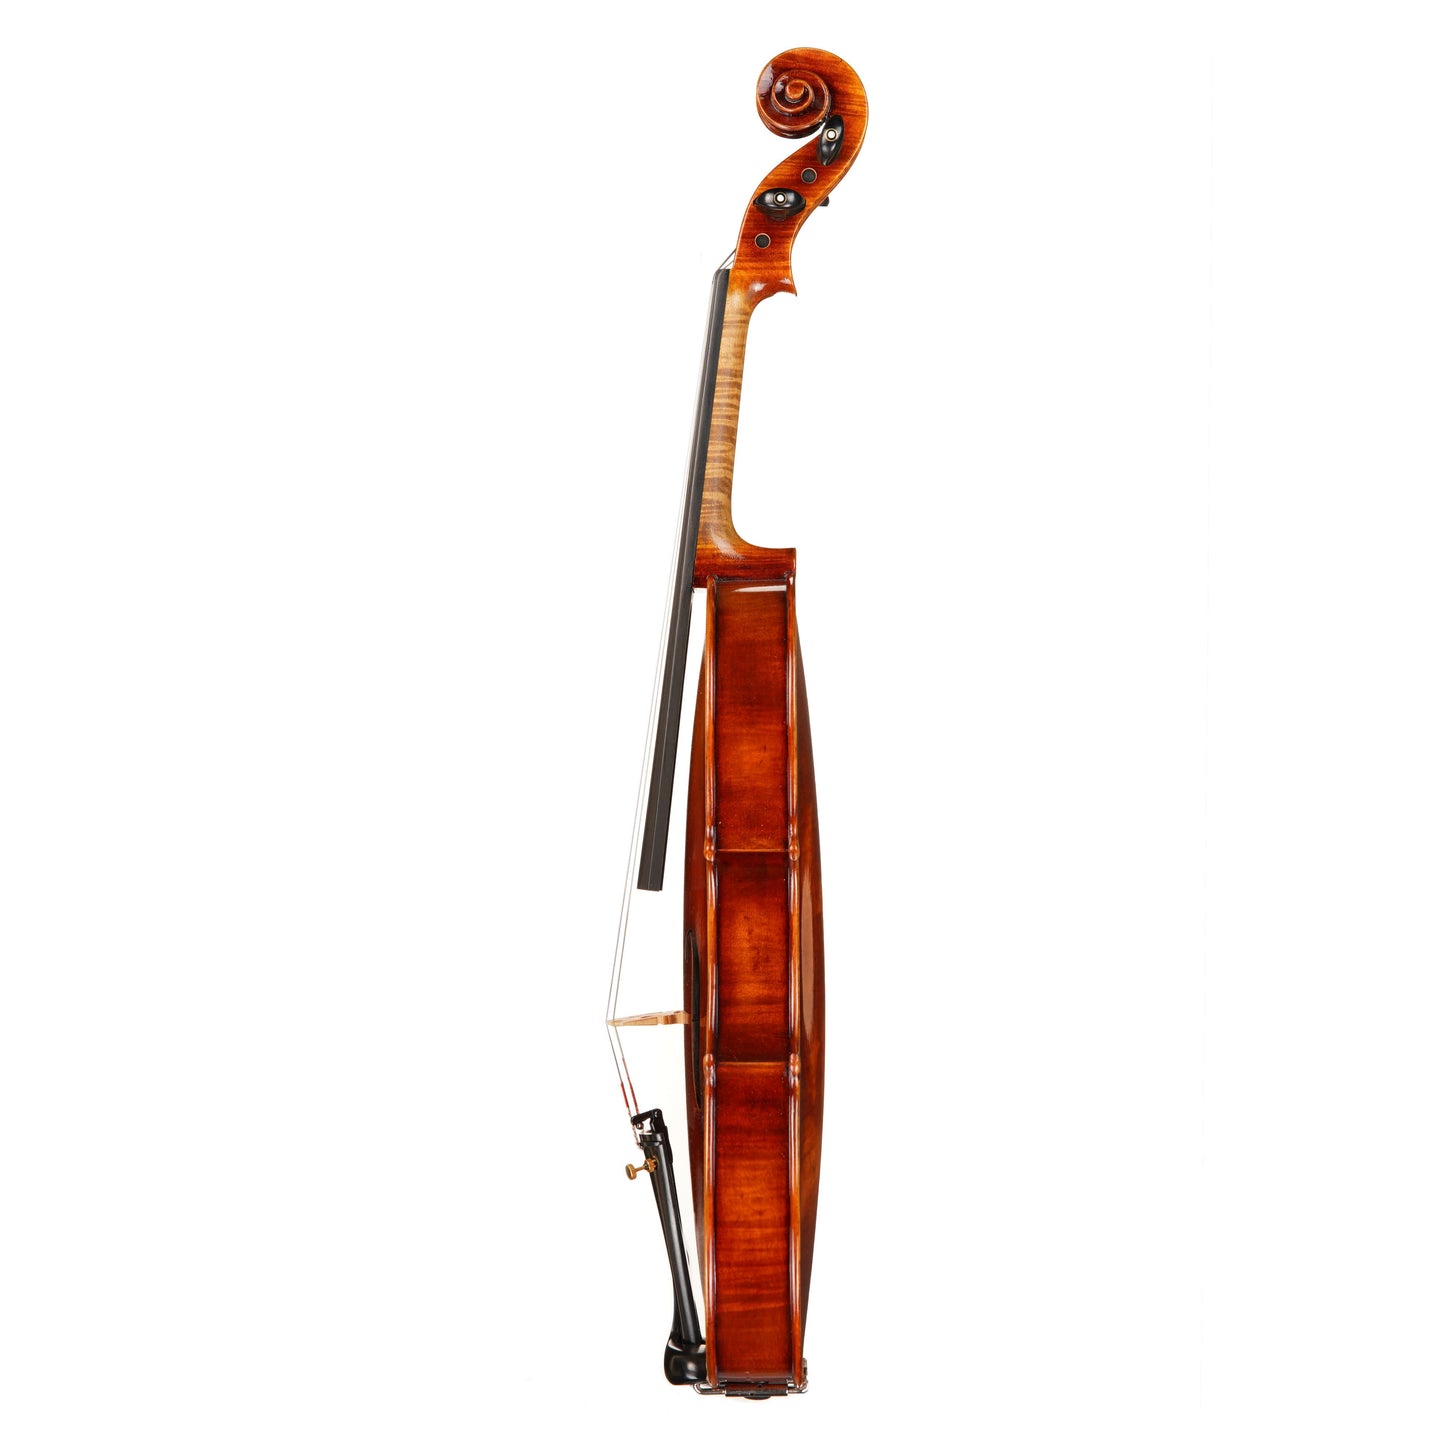 Ming Jiang Zhu MJ-350 Violin